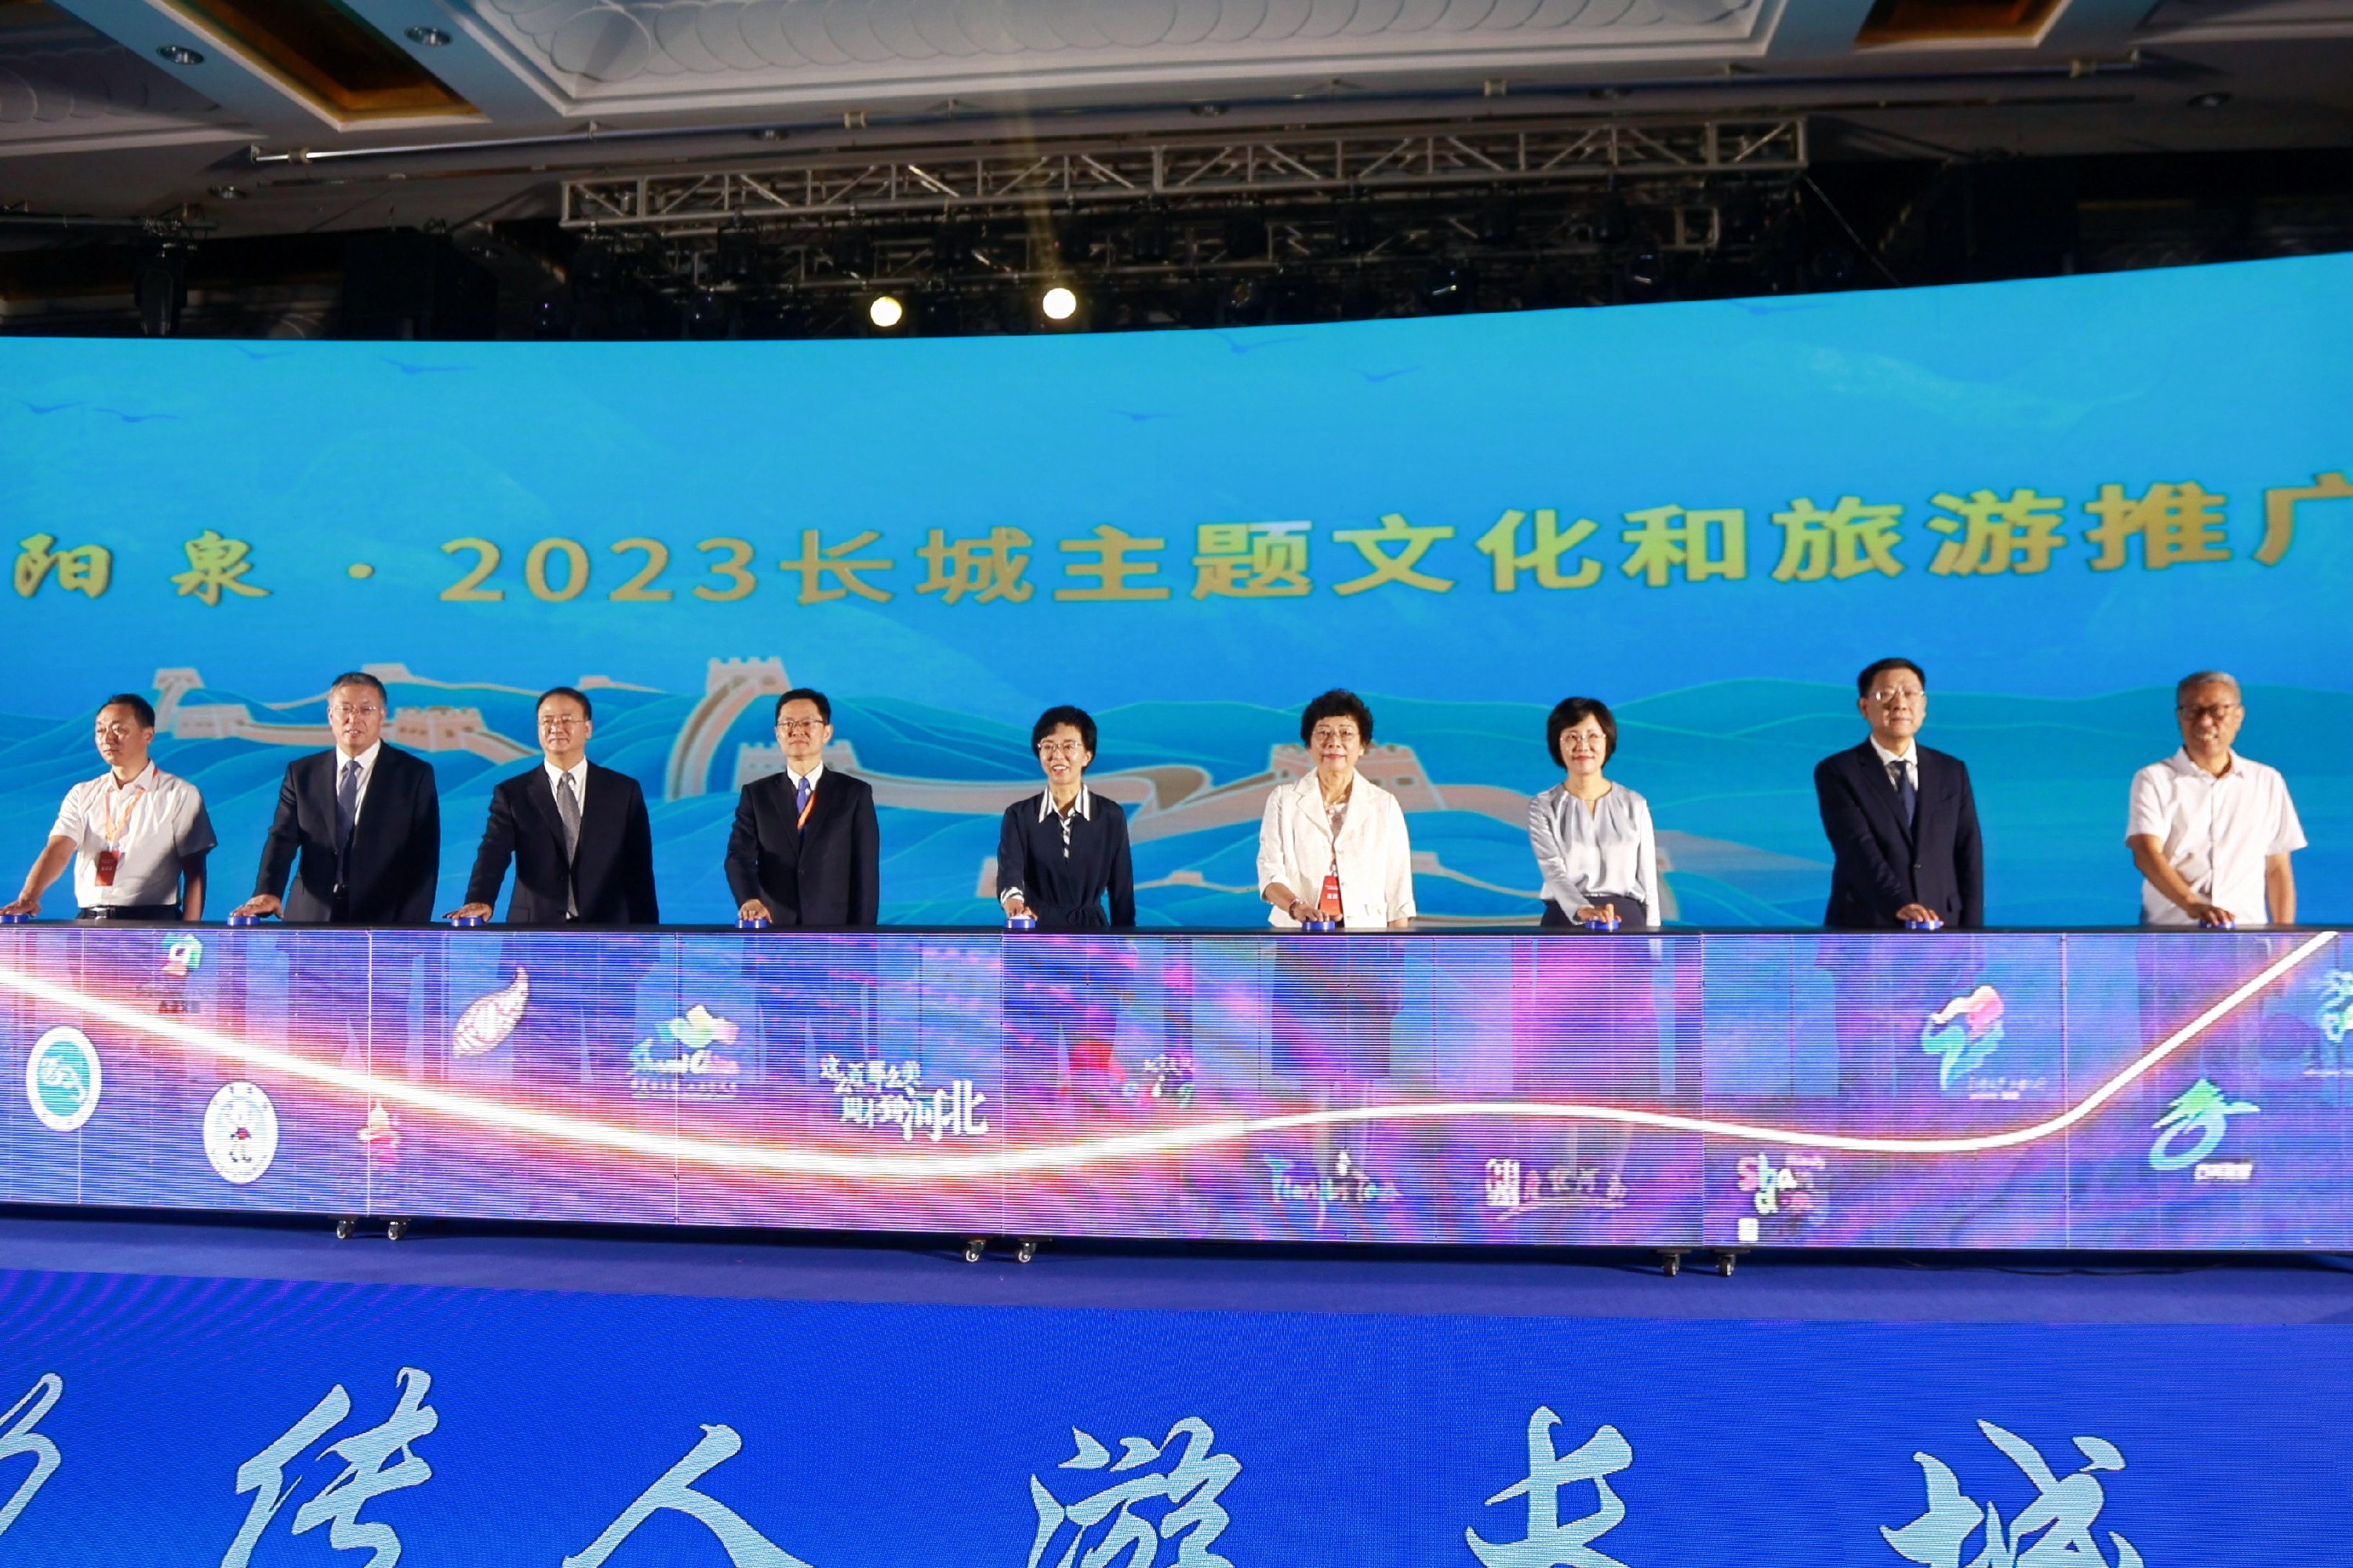 相约阳泉·2023长城主题文化和旅游推广活动启动。